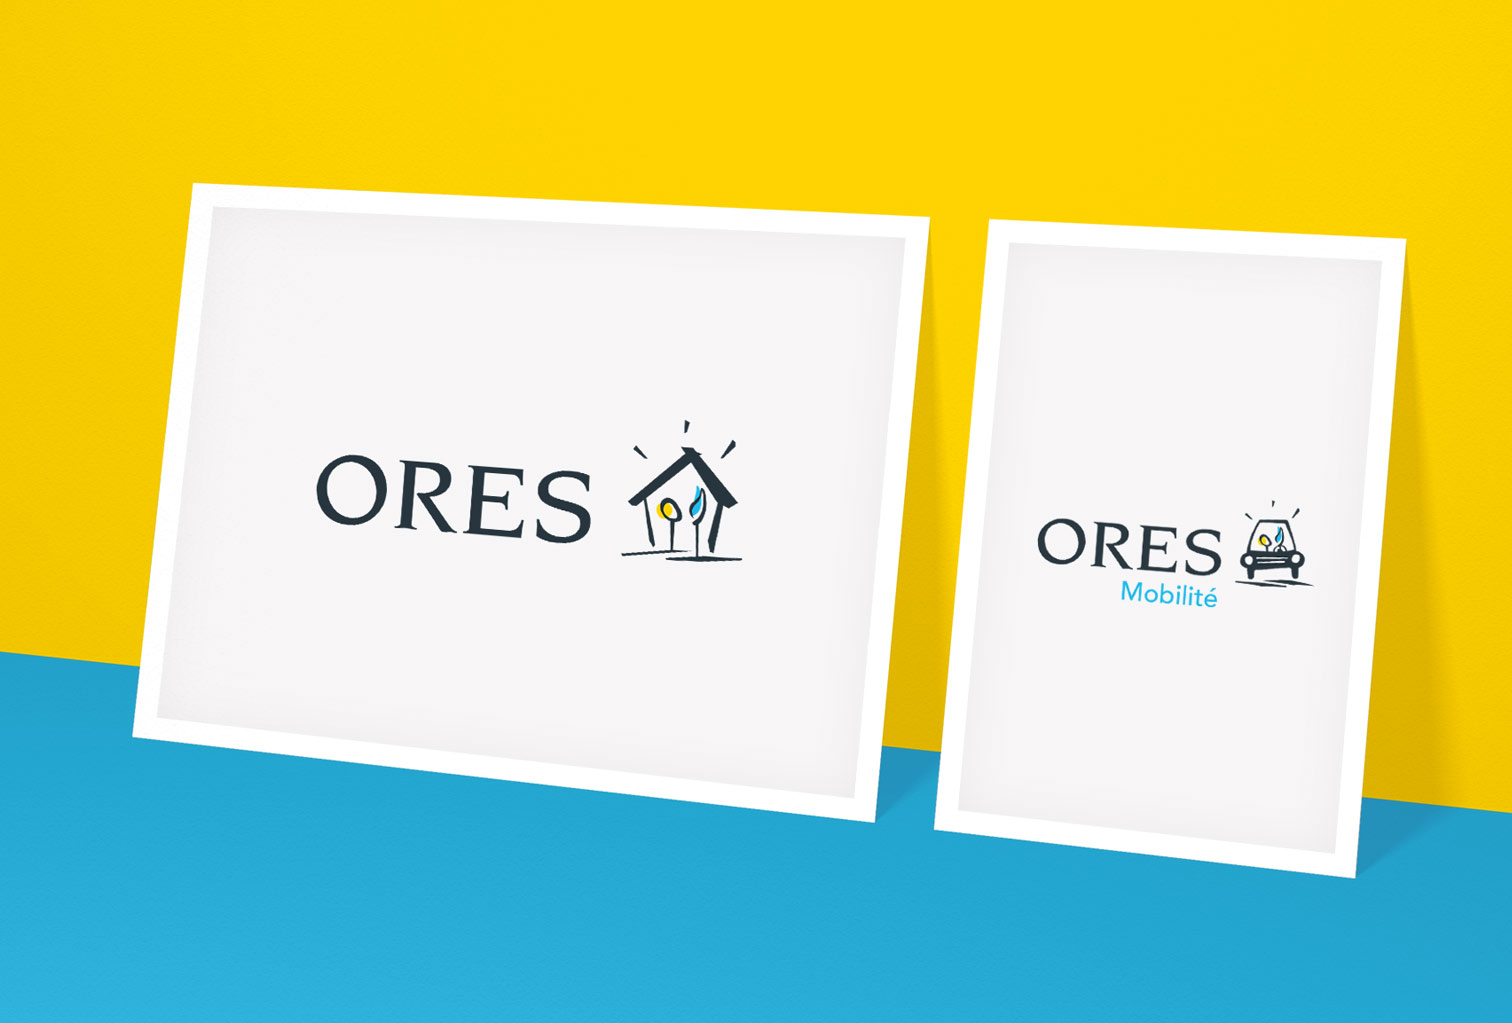 ORES new logos